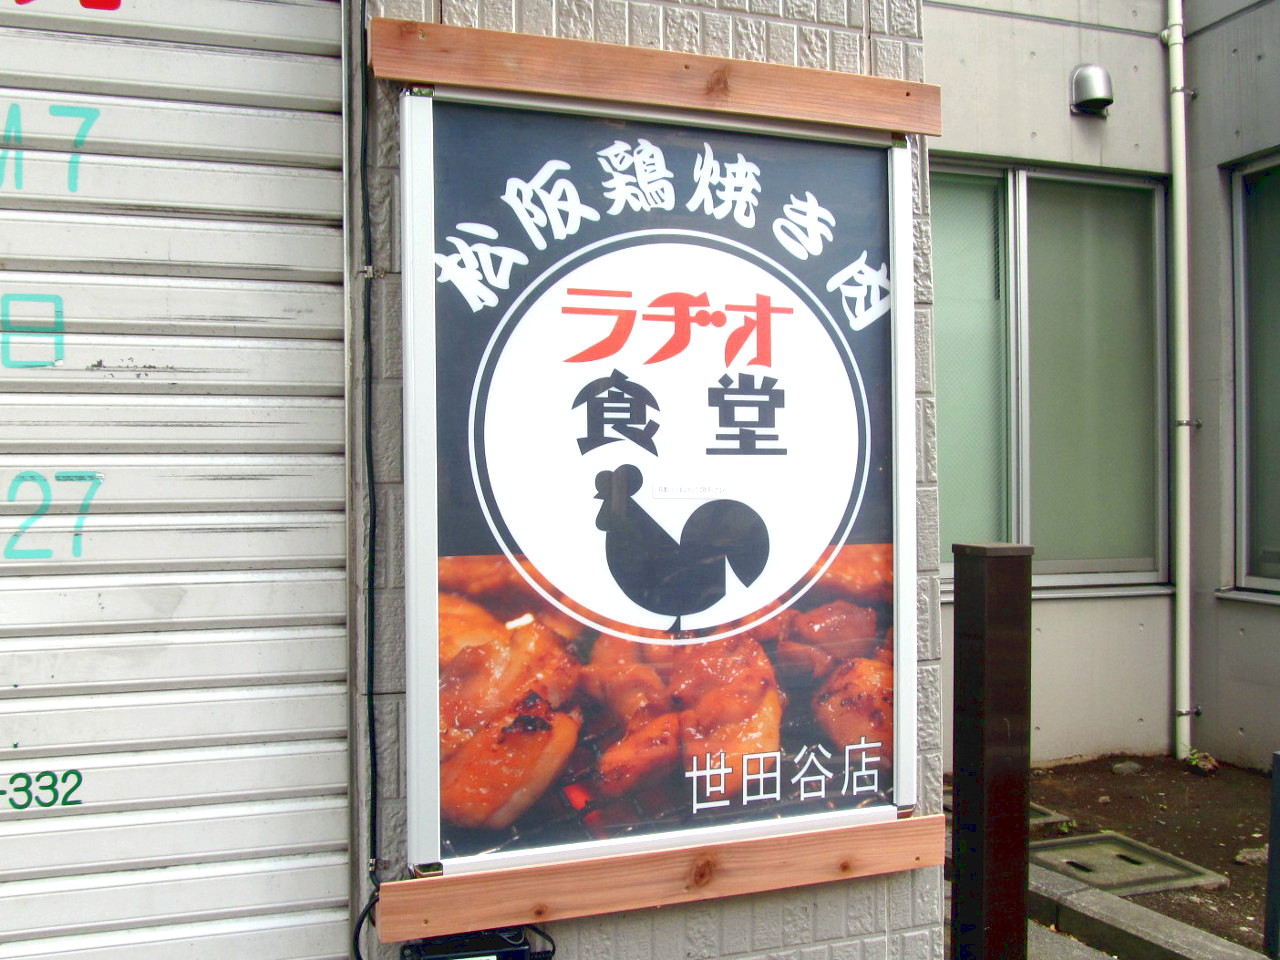 松阪鶏焼き肉ラヂオ食堂世田谷店プレオープン翌日アイキャッチ1280調整後